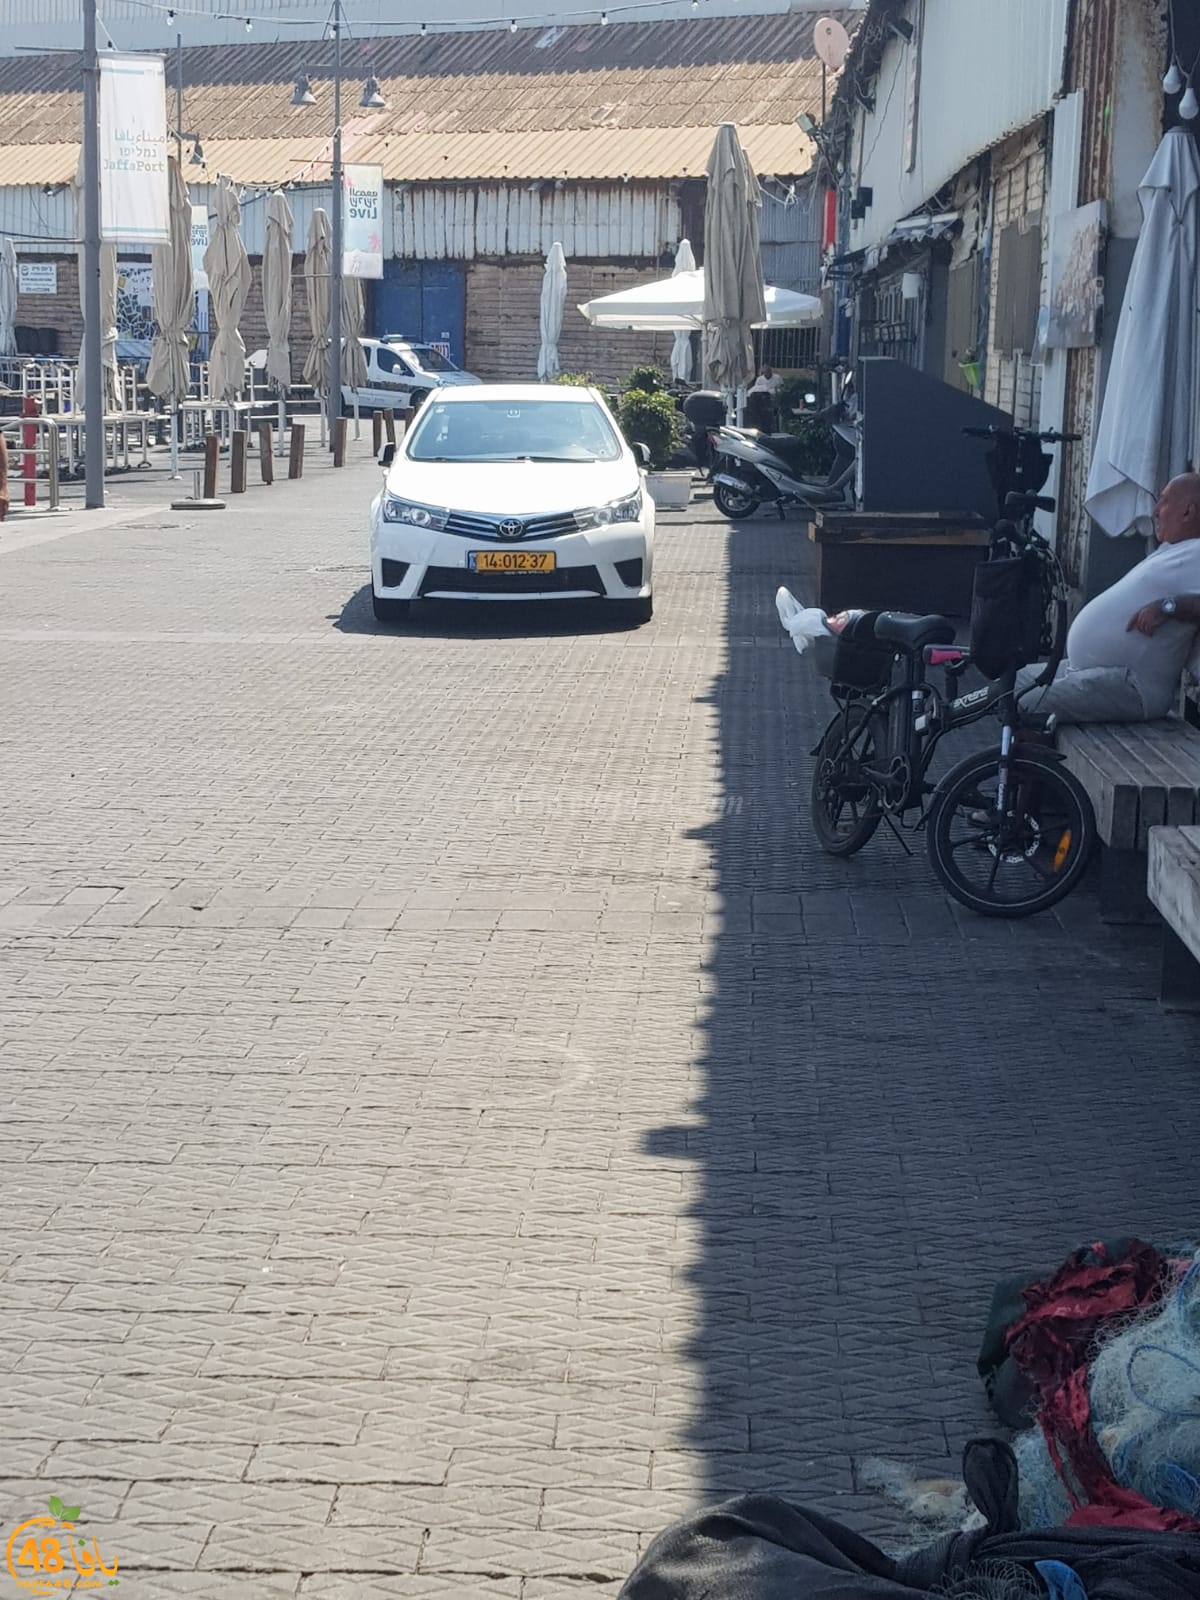  بالصور: من جديد - الشرطة تُداهم مخازن الصيادين في ميناء يافا